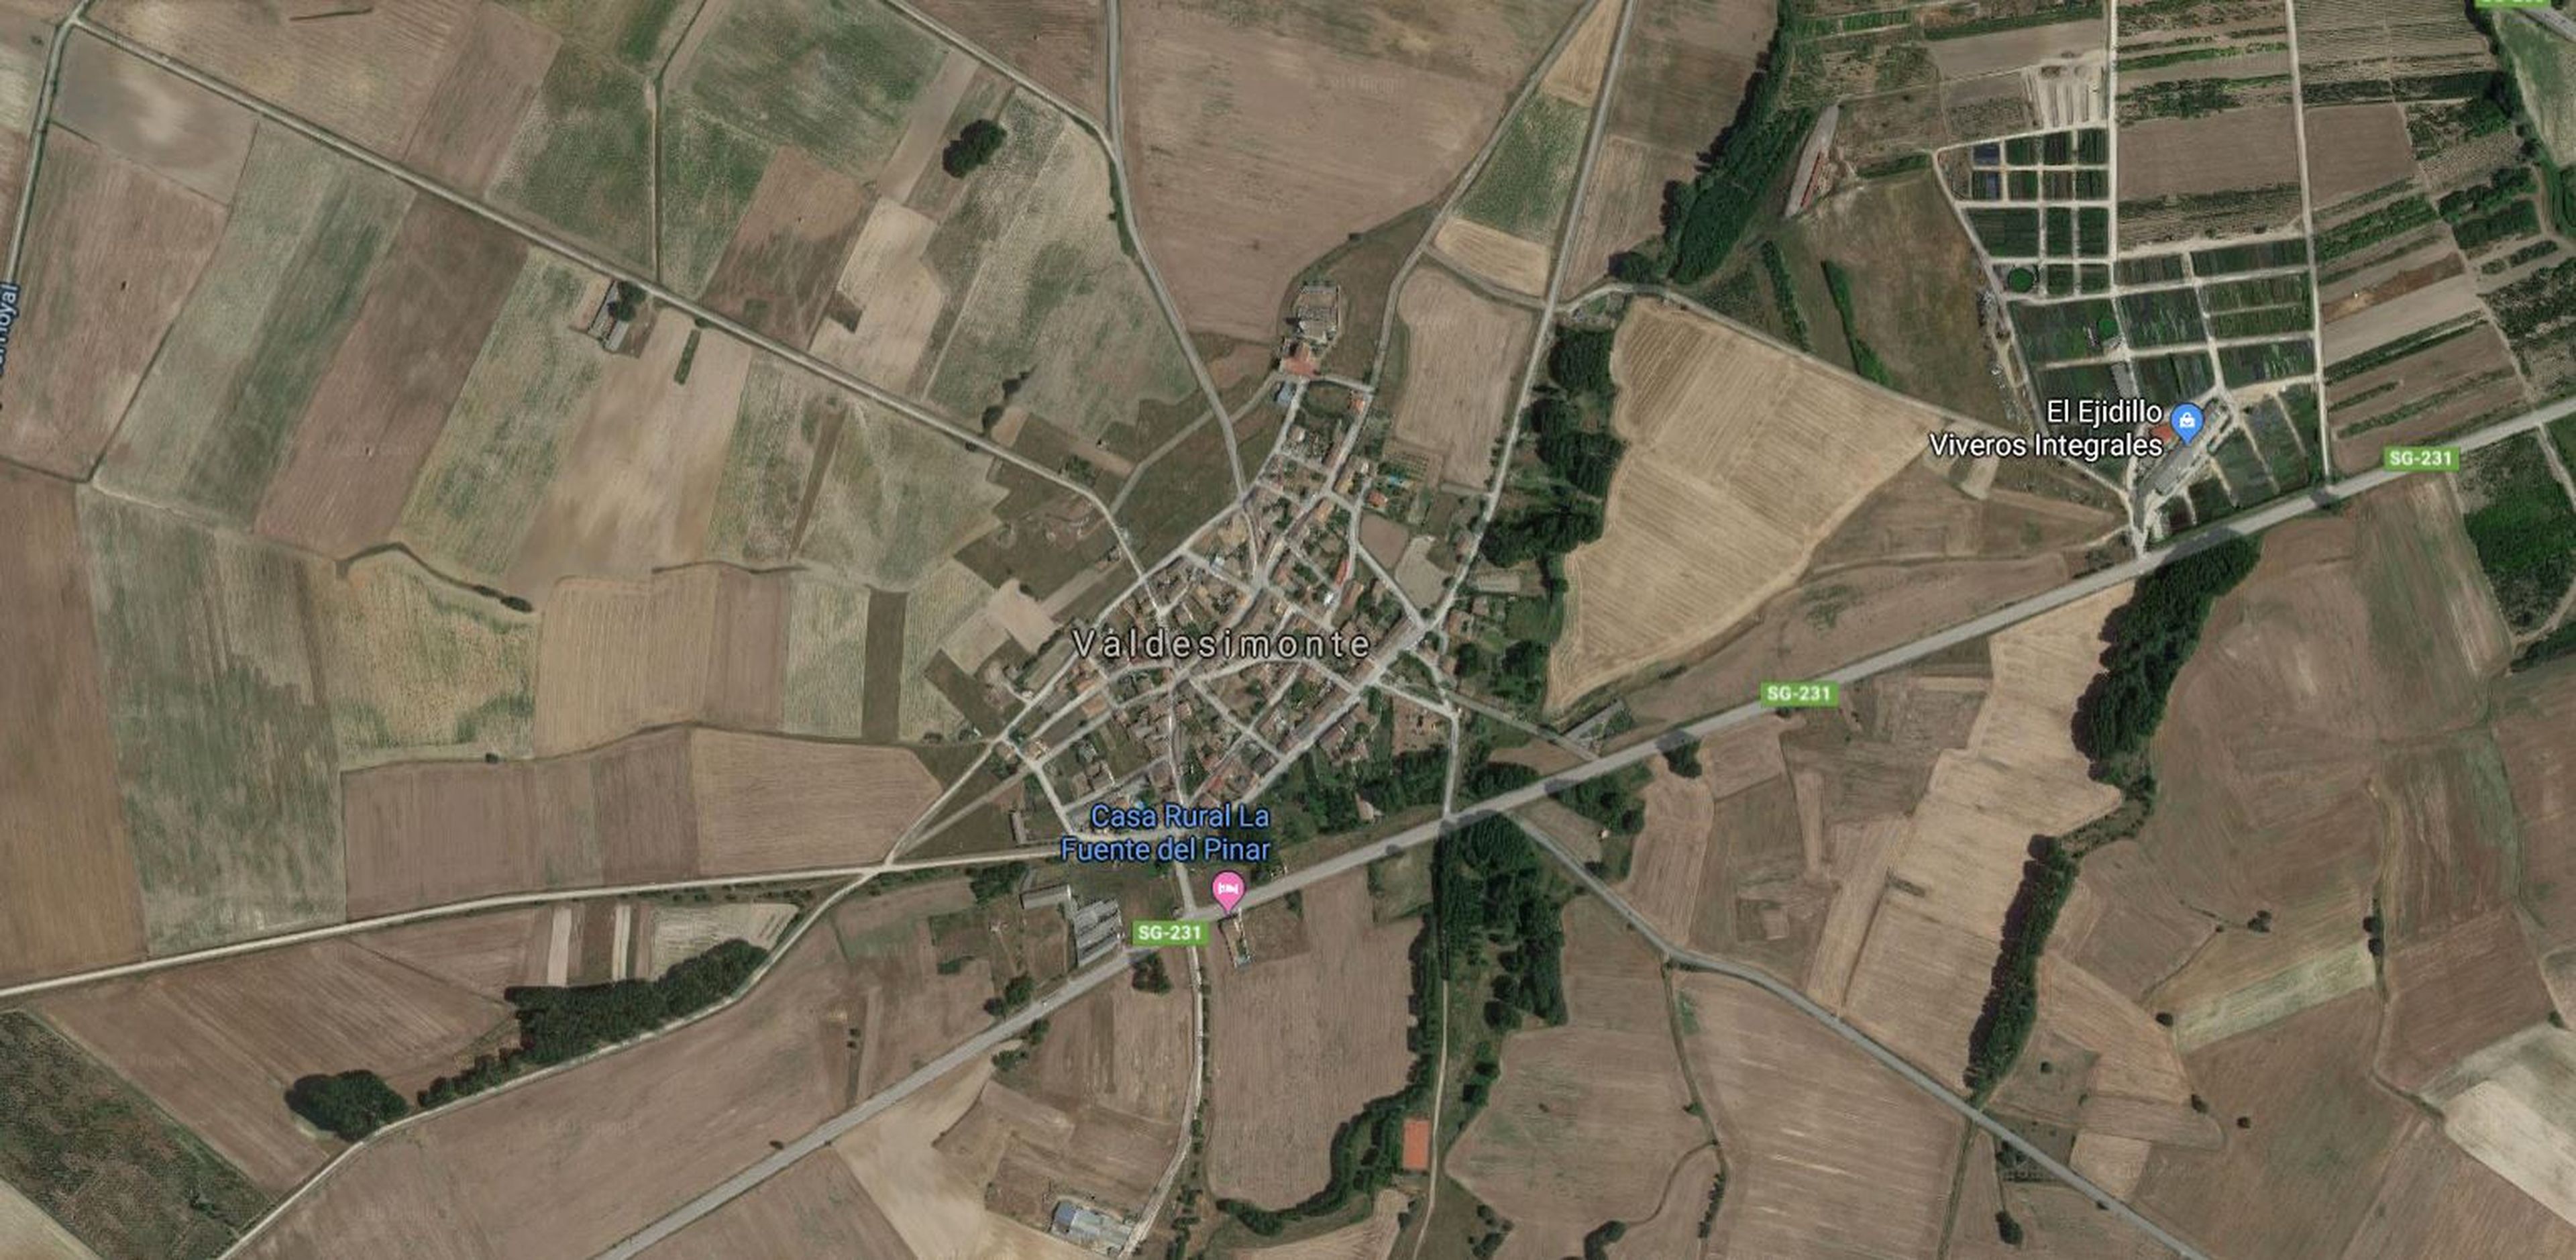 Valdesimonte, Segovia, en Google Maps